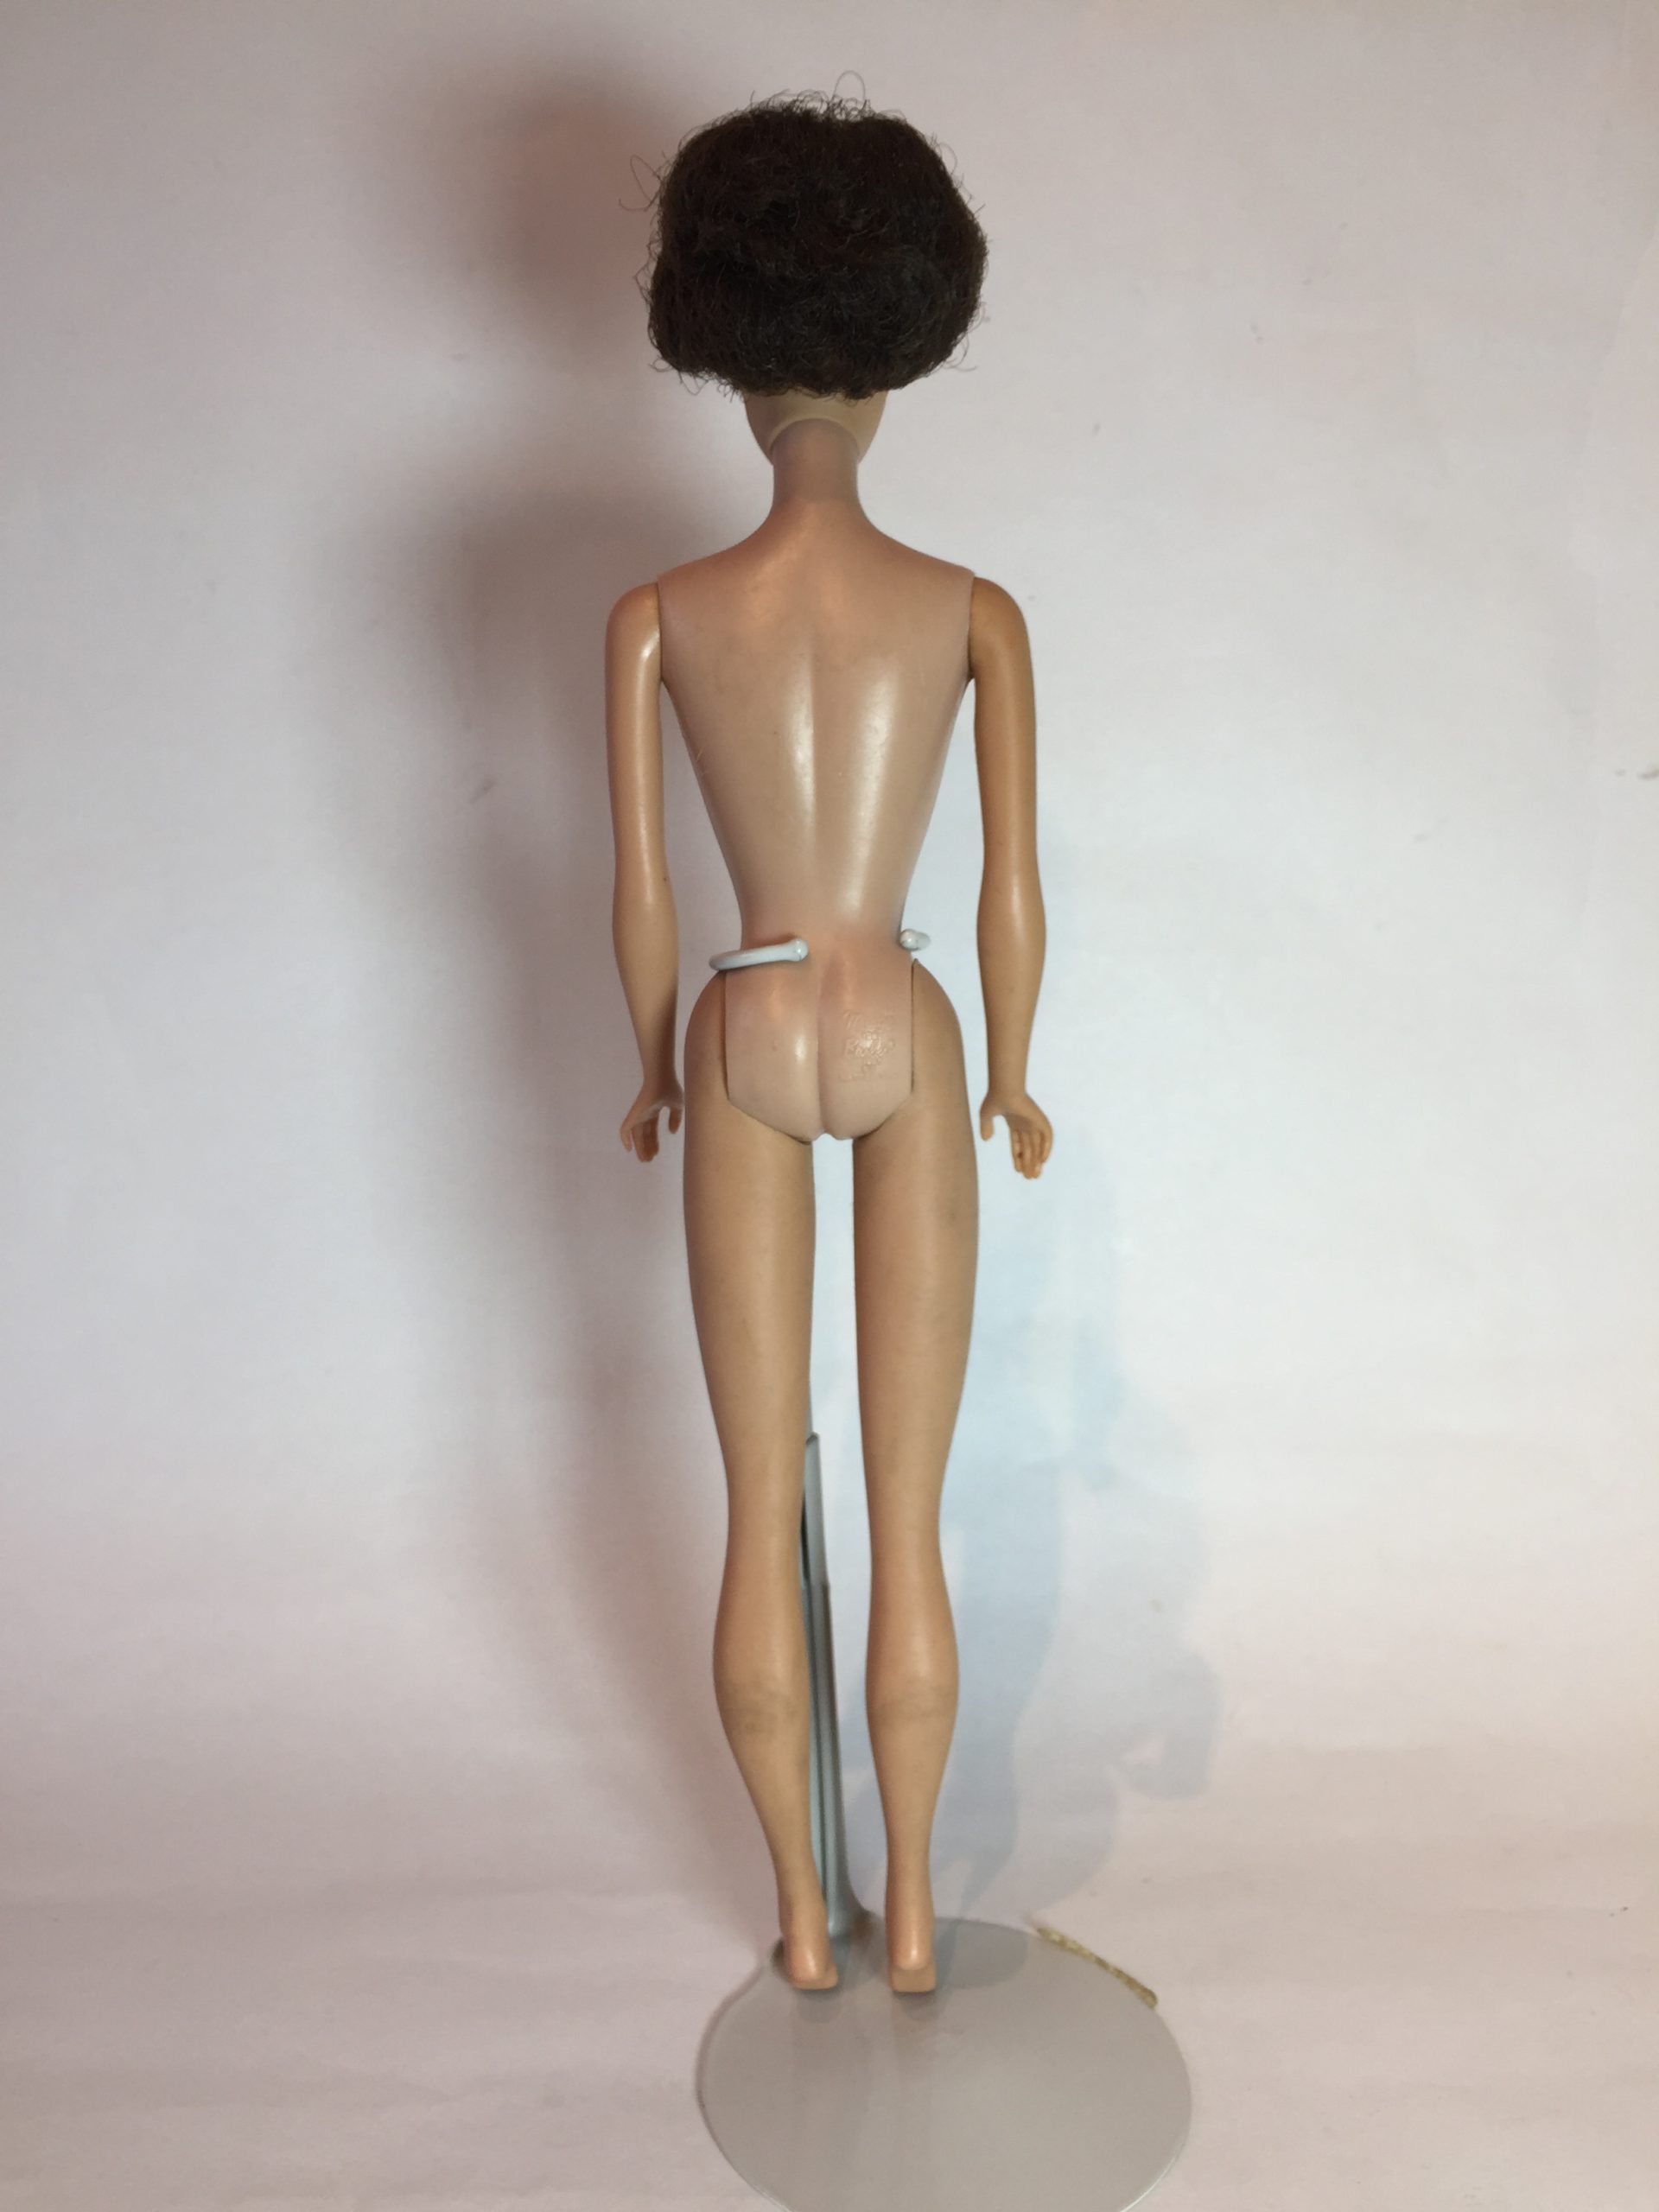 1962年製 ヴィンテージ バブルカットバービー人形 マテル社-